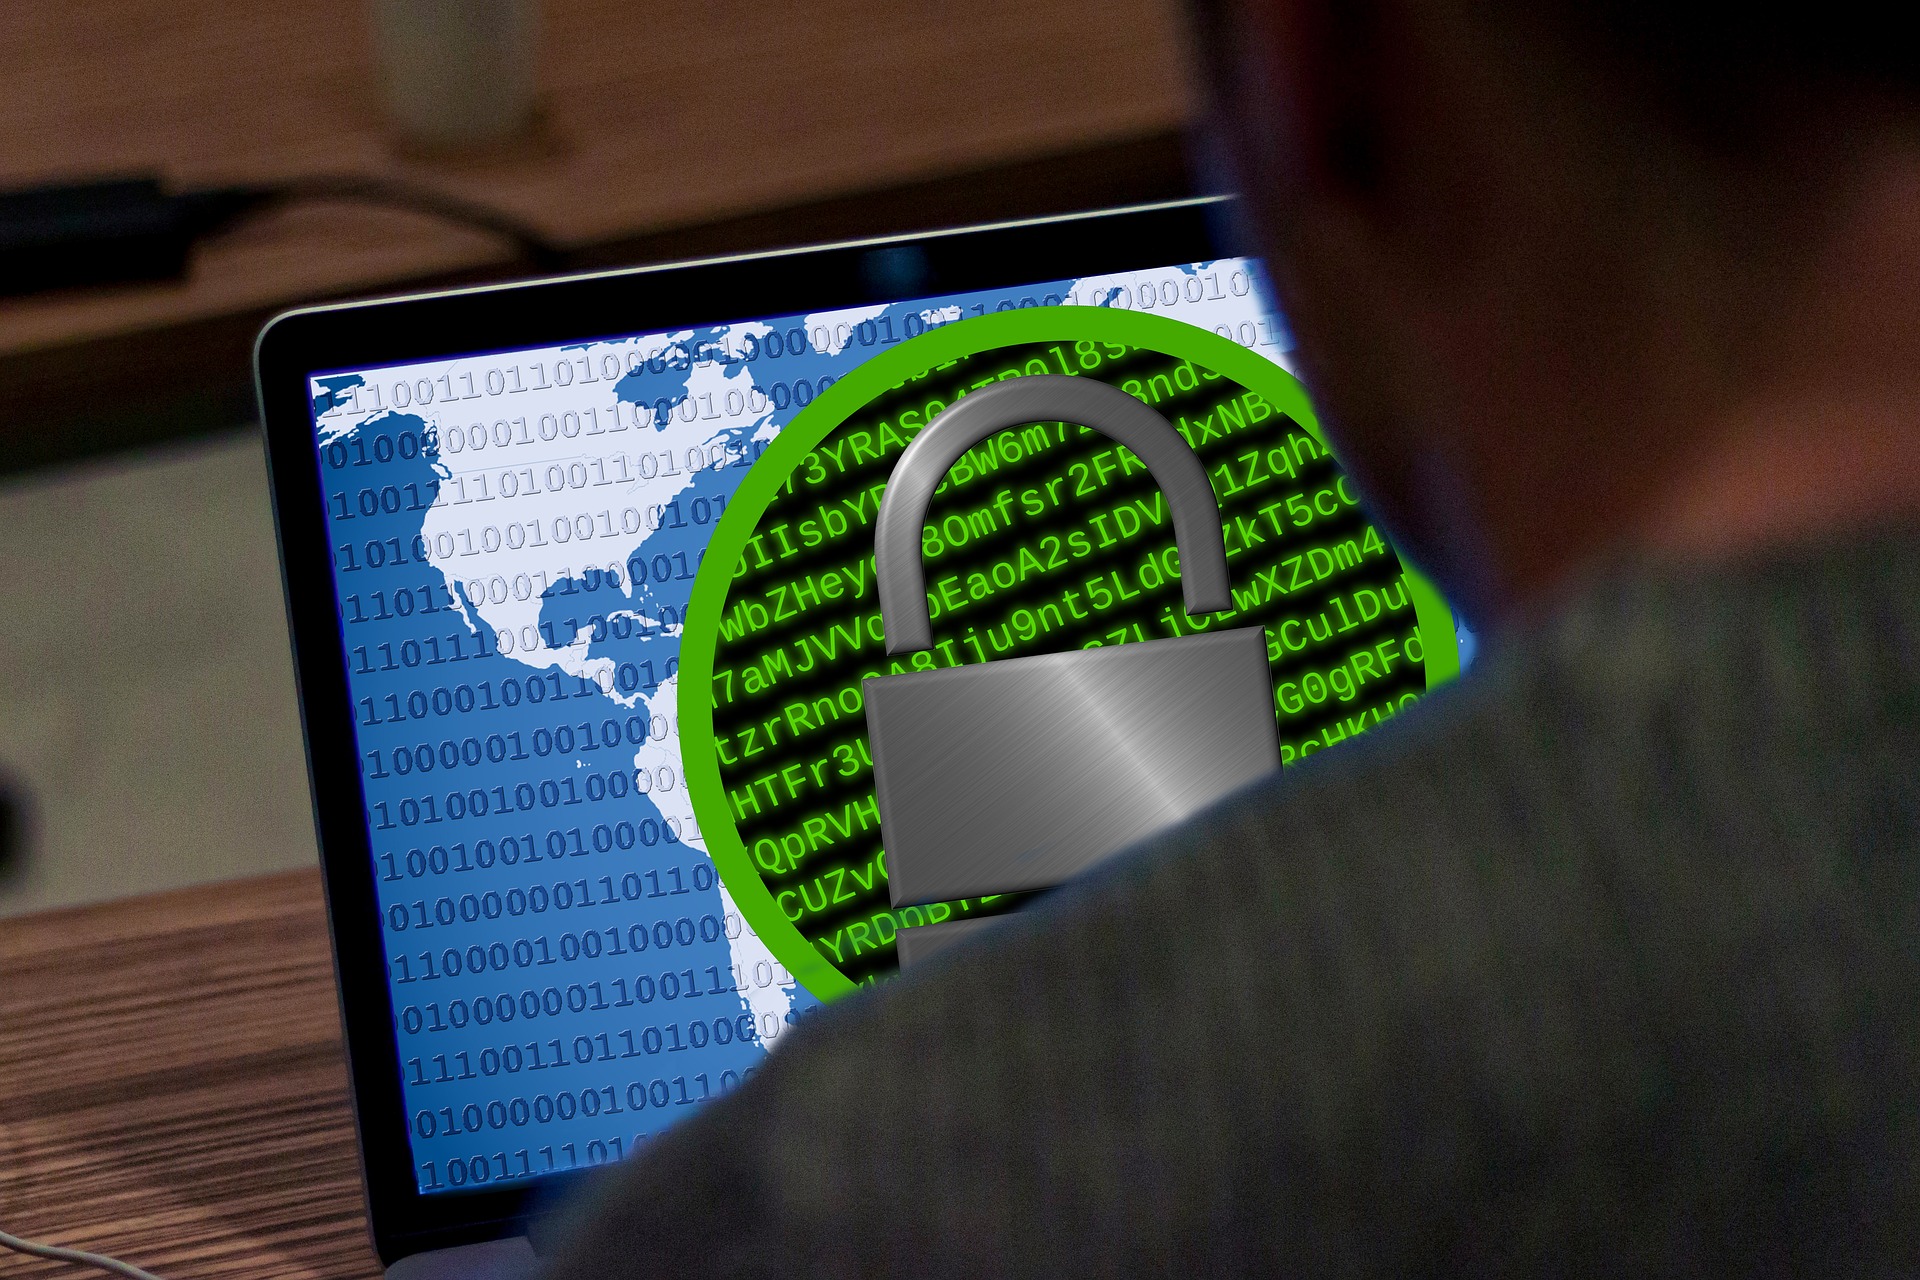 Durante gli attacchi ransomware, i criminali richiedono un riscatto da pagare per rimuovere la limitazione